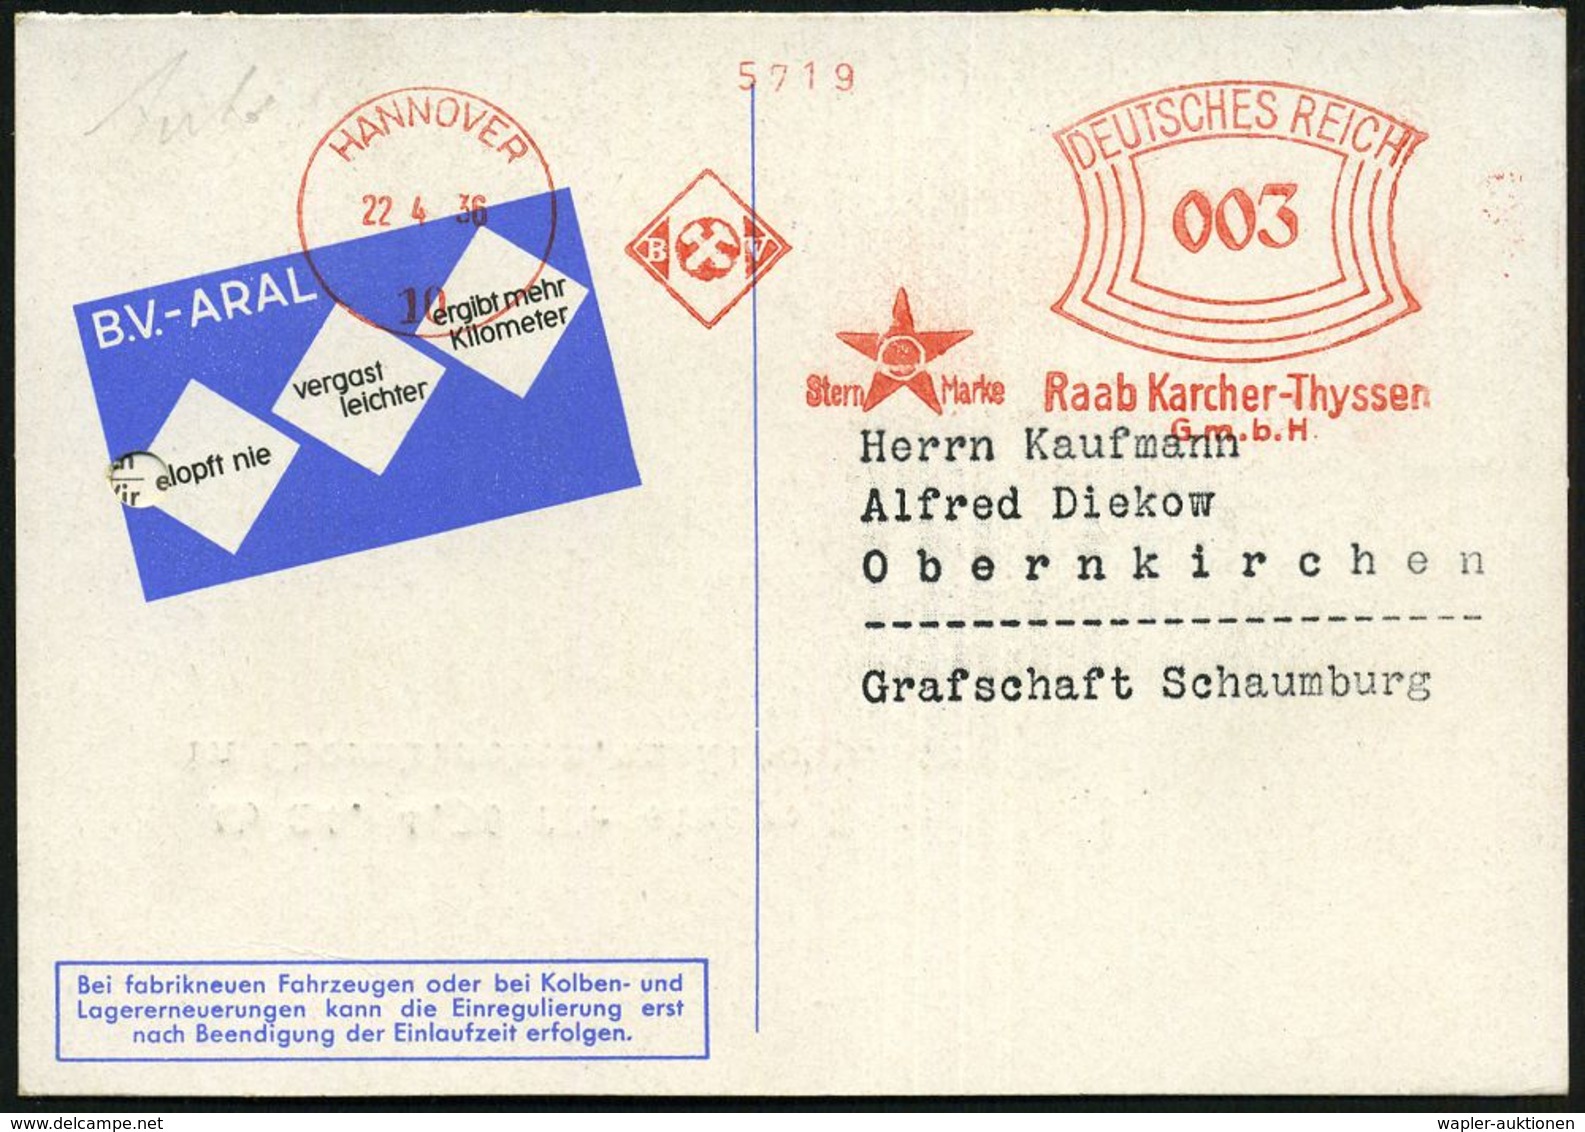 WERKSTATT / GARAGE / TANKSTELLE : HANNOVER/ 10/ BV/ ..Raab Karcher-Thyssen/ GmbH 1936 (22.4.) AFS (Aral-Stern-Logo) Klap - Autos